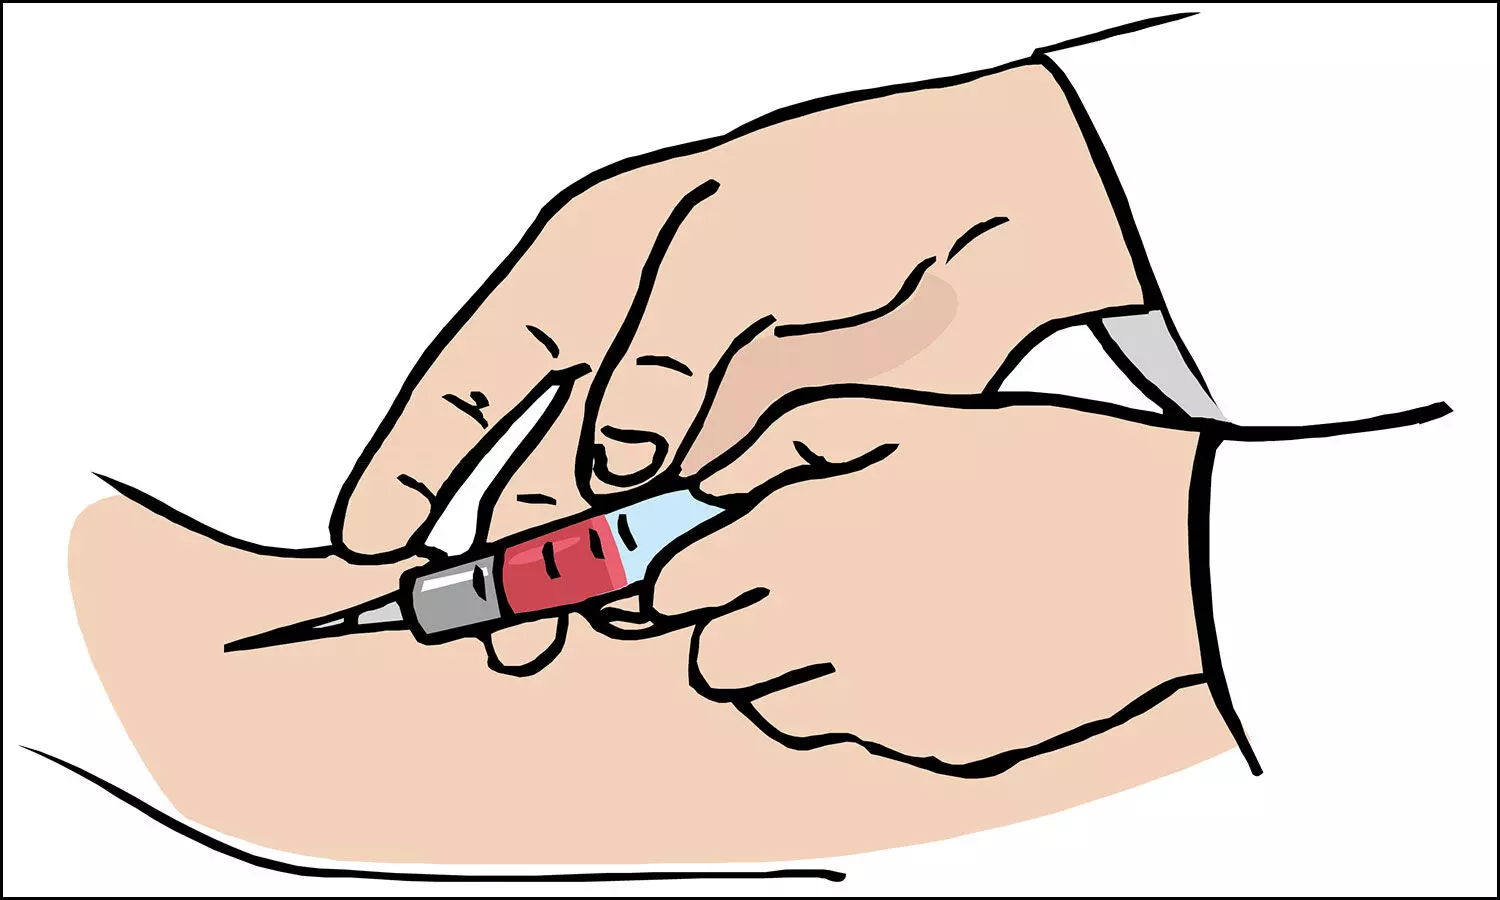 Novel blood test-A non-invasive diagnostic option to detect CAD